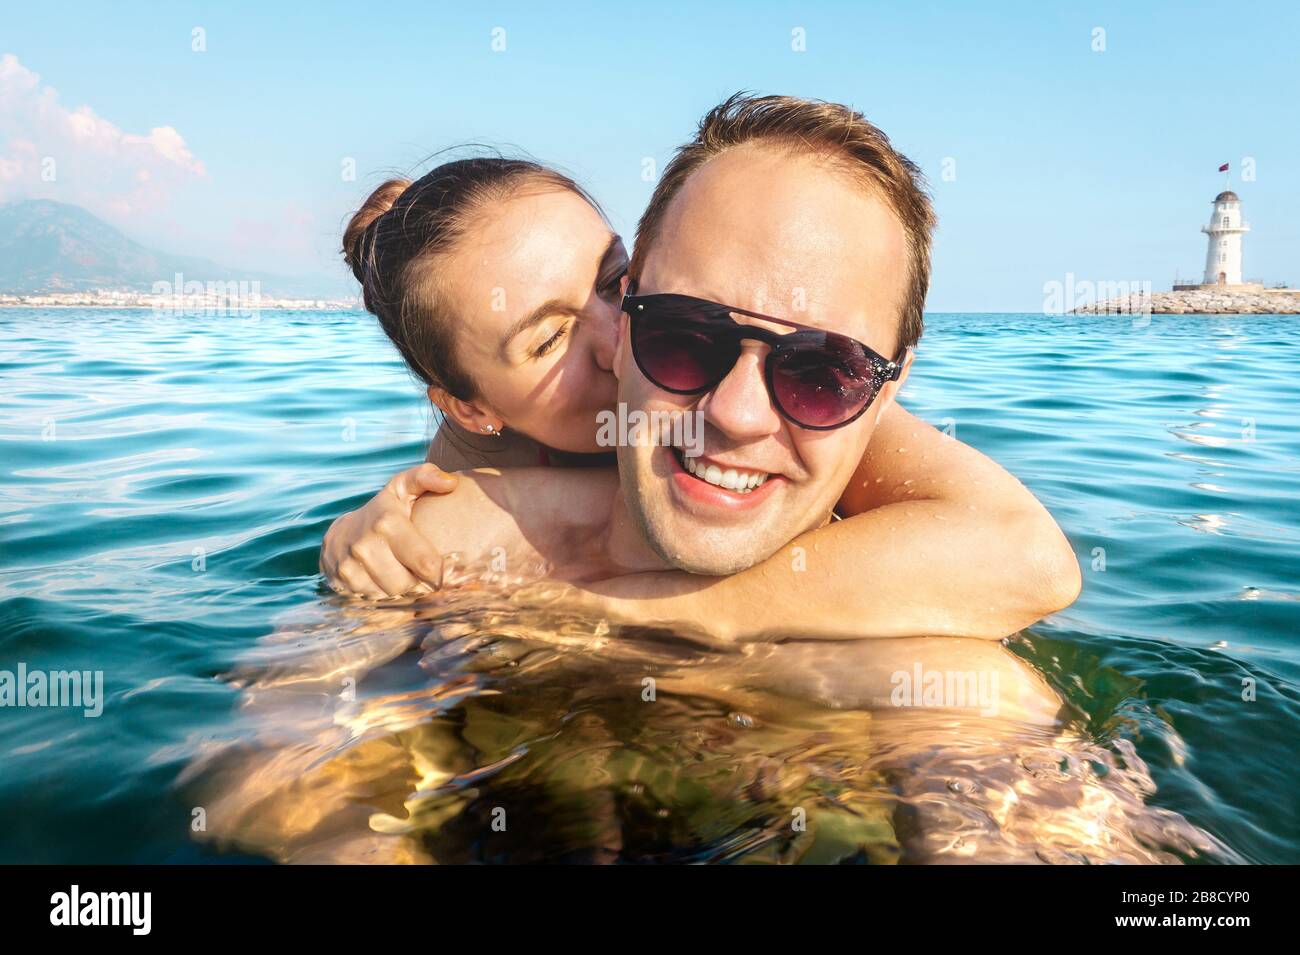 Paar, das selfie im Wasser nimmt, während er im Urlaub im Meer schwimmt. Zwei glückliche Leute im unterhaltsamen Familienurlaub. Romantische Flitterwochen im tropischen Sommer. Stockfoto